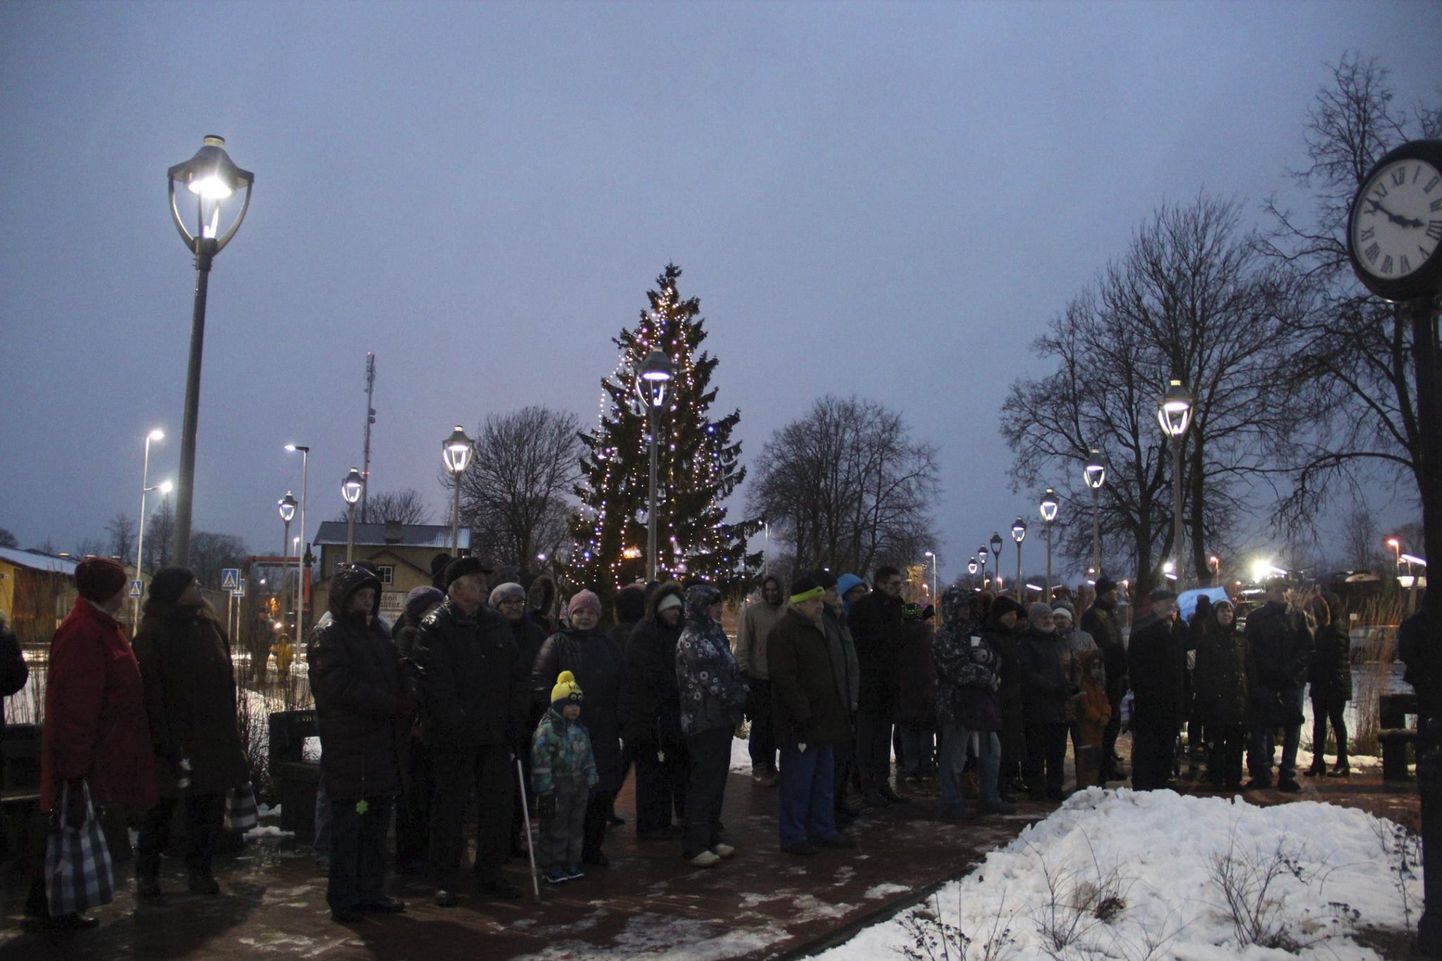 Tapal rõõmustab tänavu elanikke elus jõulupuu ­rongi- ja bussijaama juures pargis.